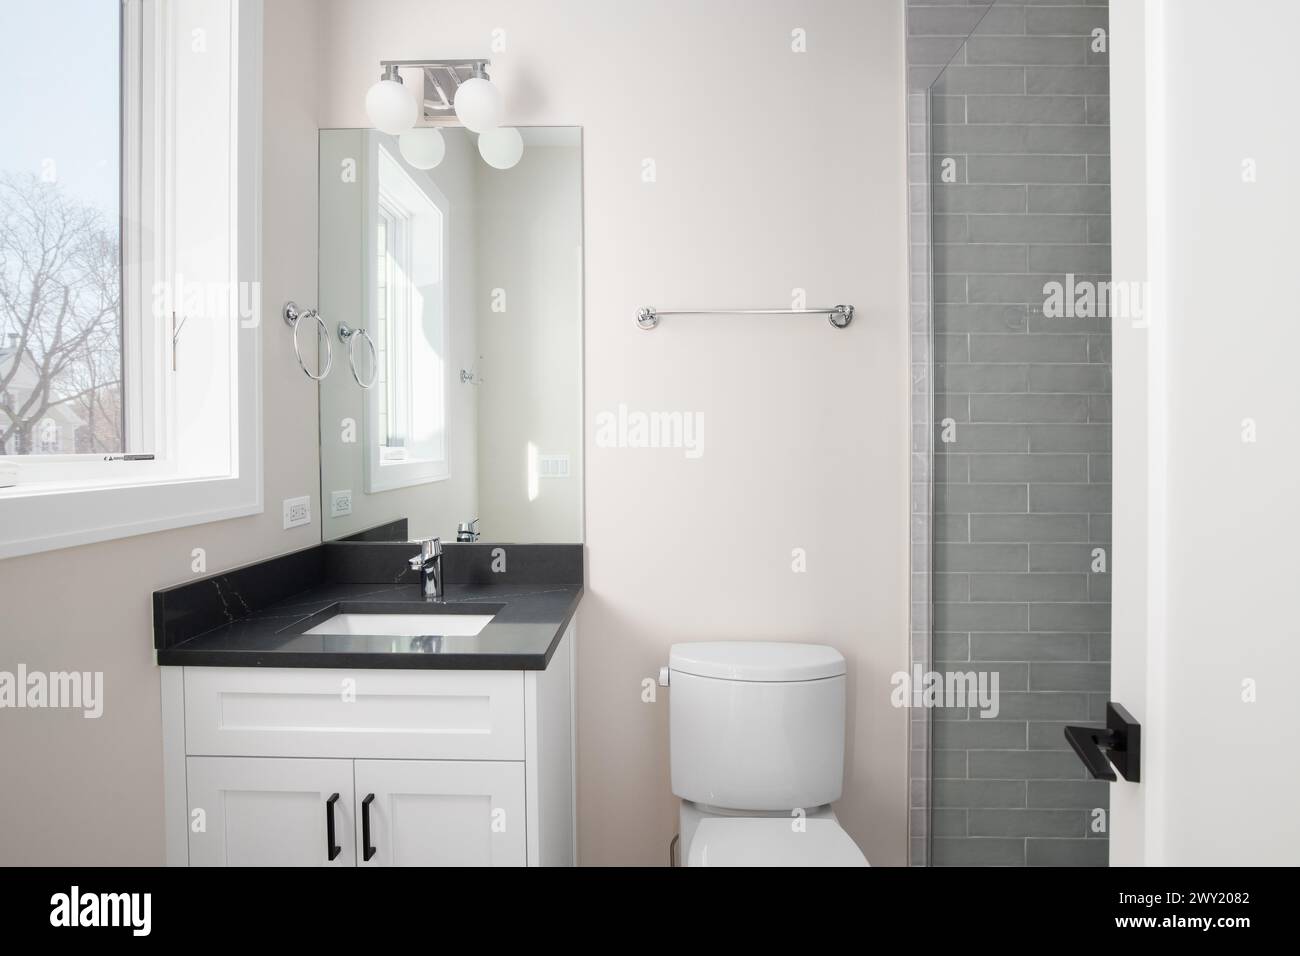 Une salle de bains avec une armoire blanche, un comptoir en marbre noir et une douche avec carrelage gris du métro. Banque D'Images